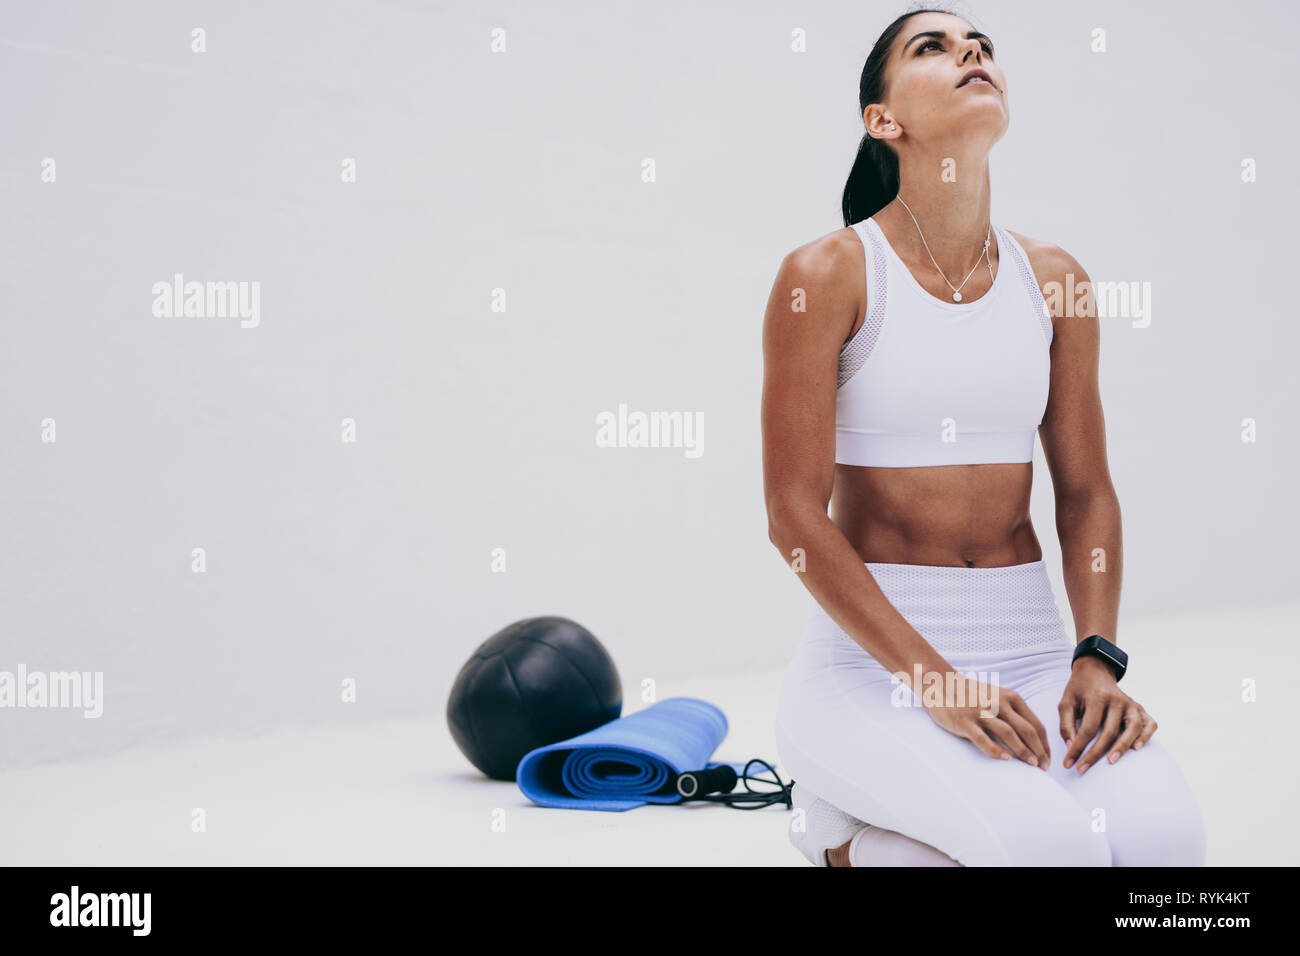 Fitnesstraining-Frau, die auf dem Boden sitzt und aufblickt. Eine Frau, die mit ihren Fitnessgeräten neben ihr Fitnesstraining macht. Stockfoto